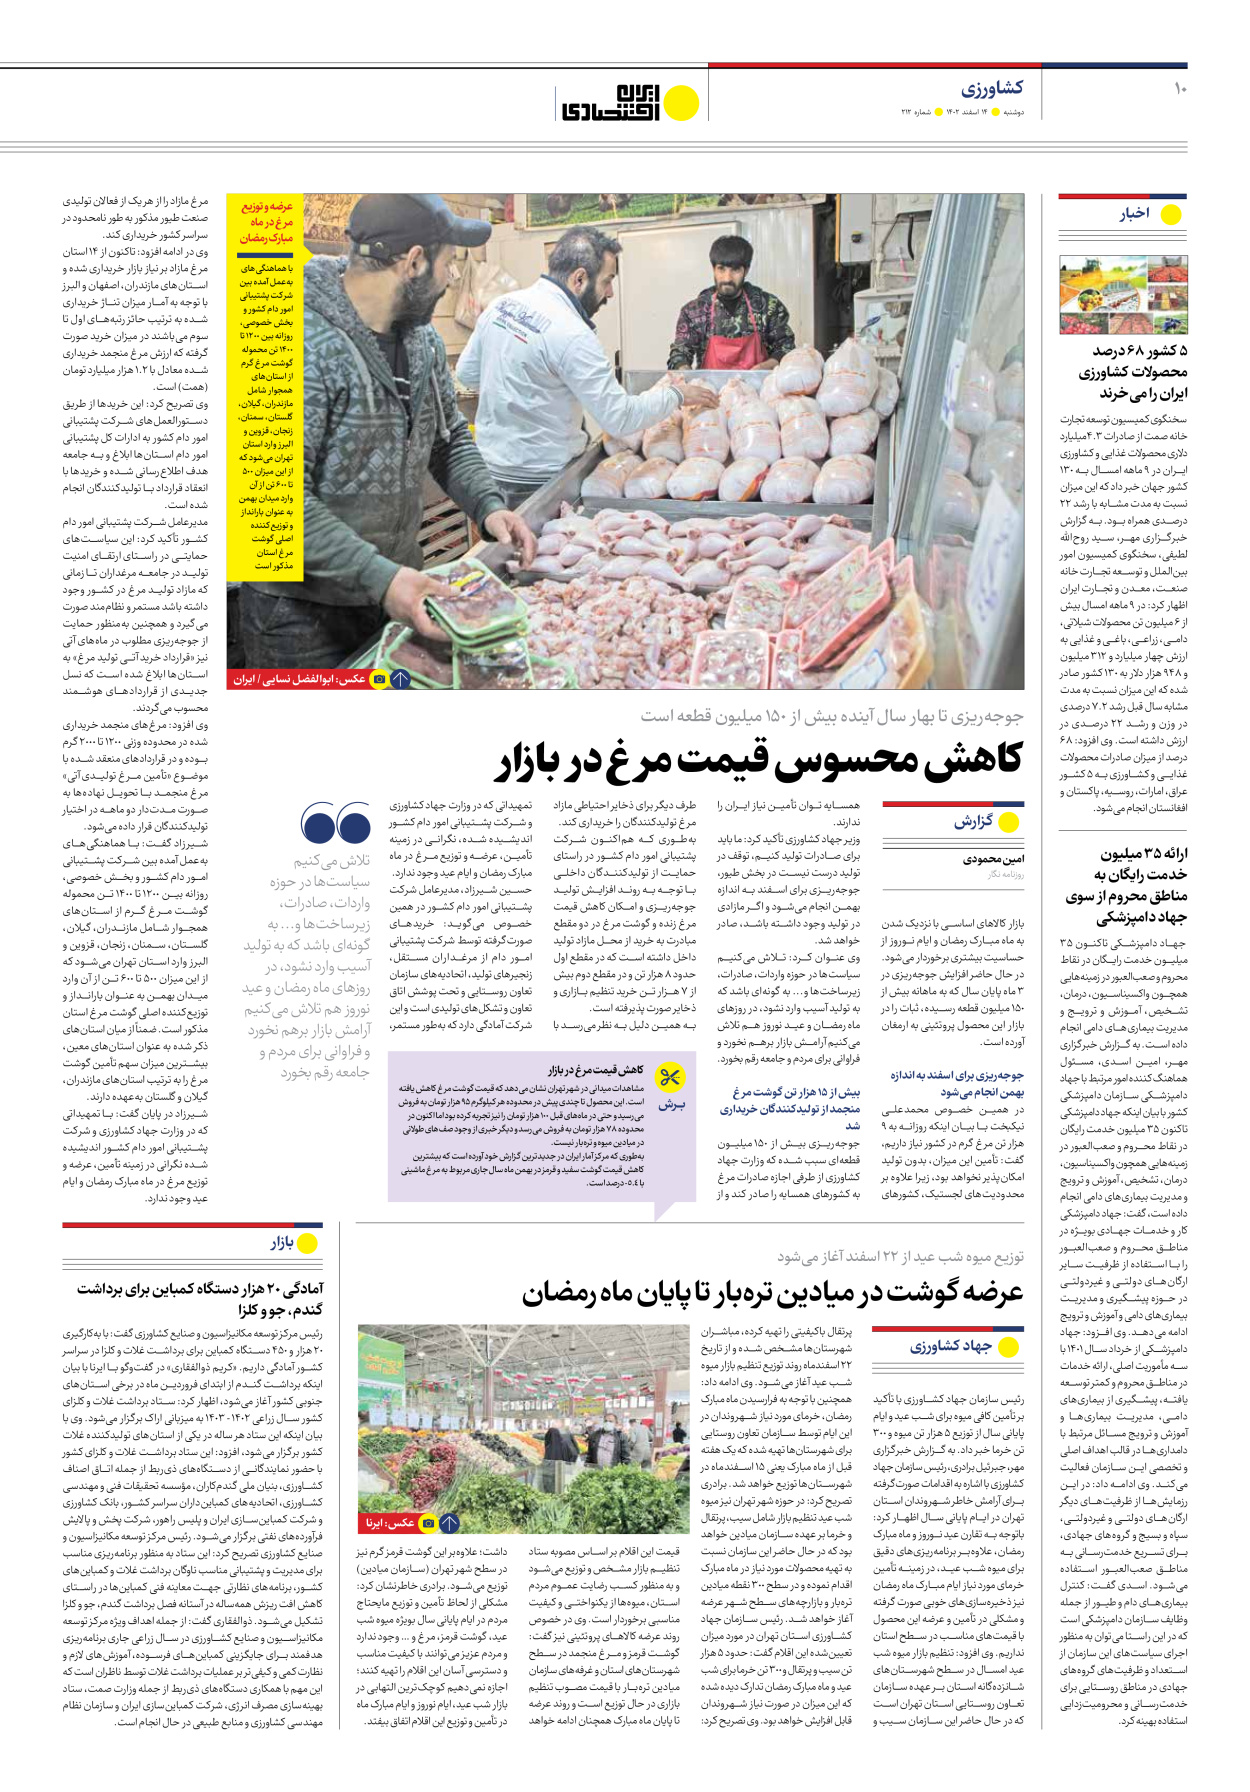 روزنامه ایران اقتصادی - شماره دویست و دوازده - ۱۴ اسفند ۱۴۰۲ - صفحه ۱۰